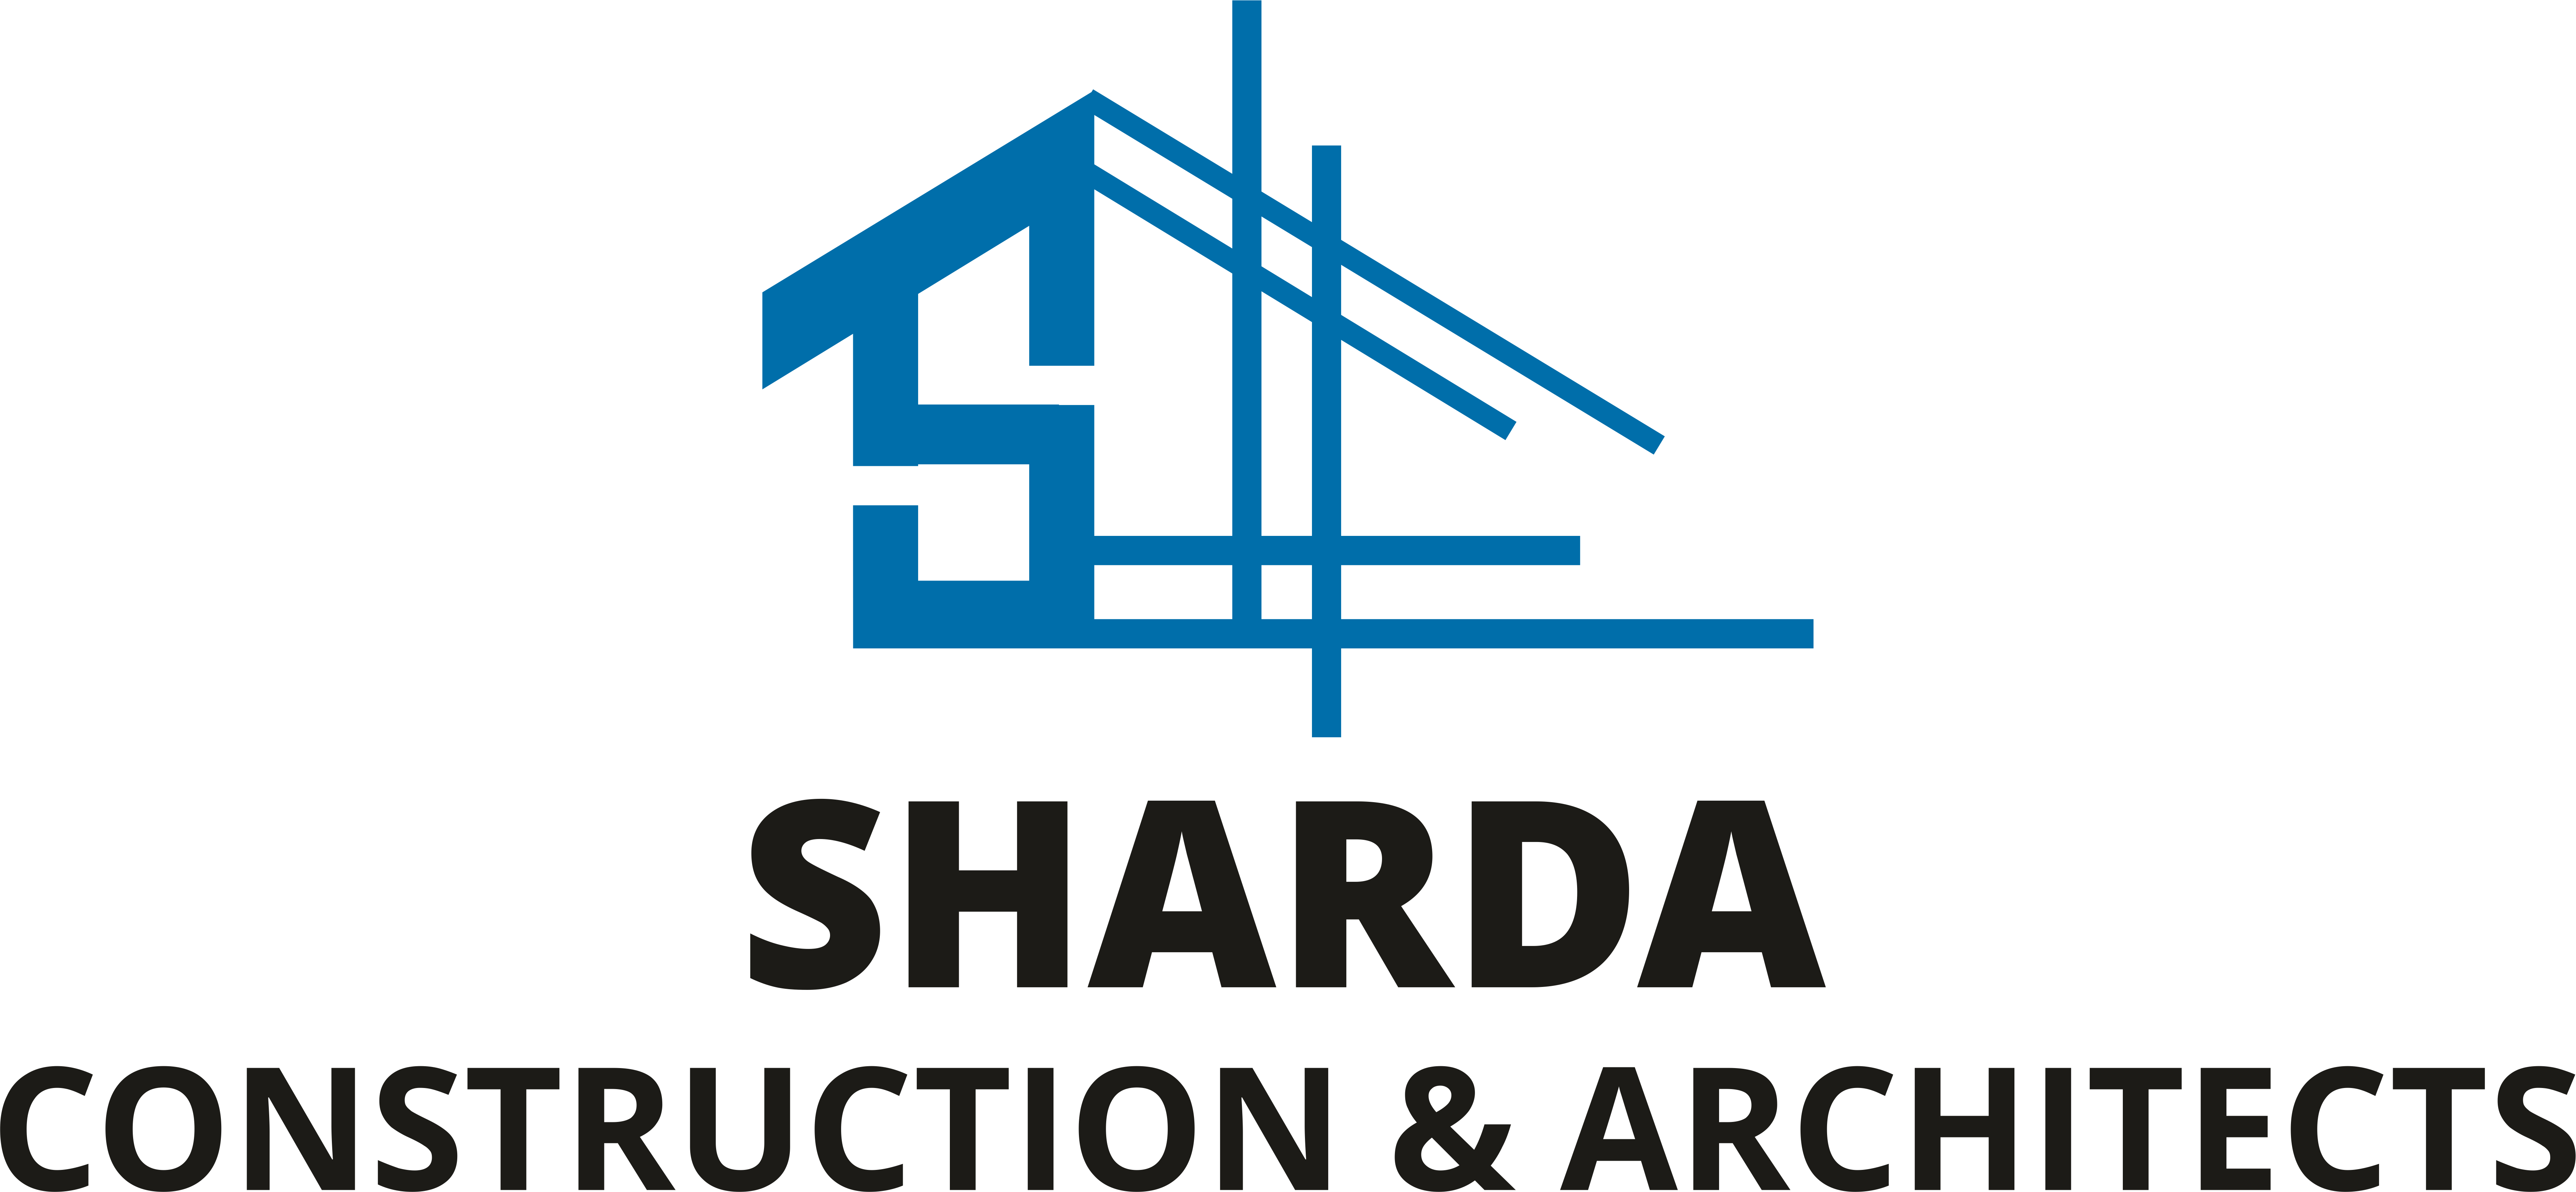 Architecture - Sharda Construction & Architects